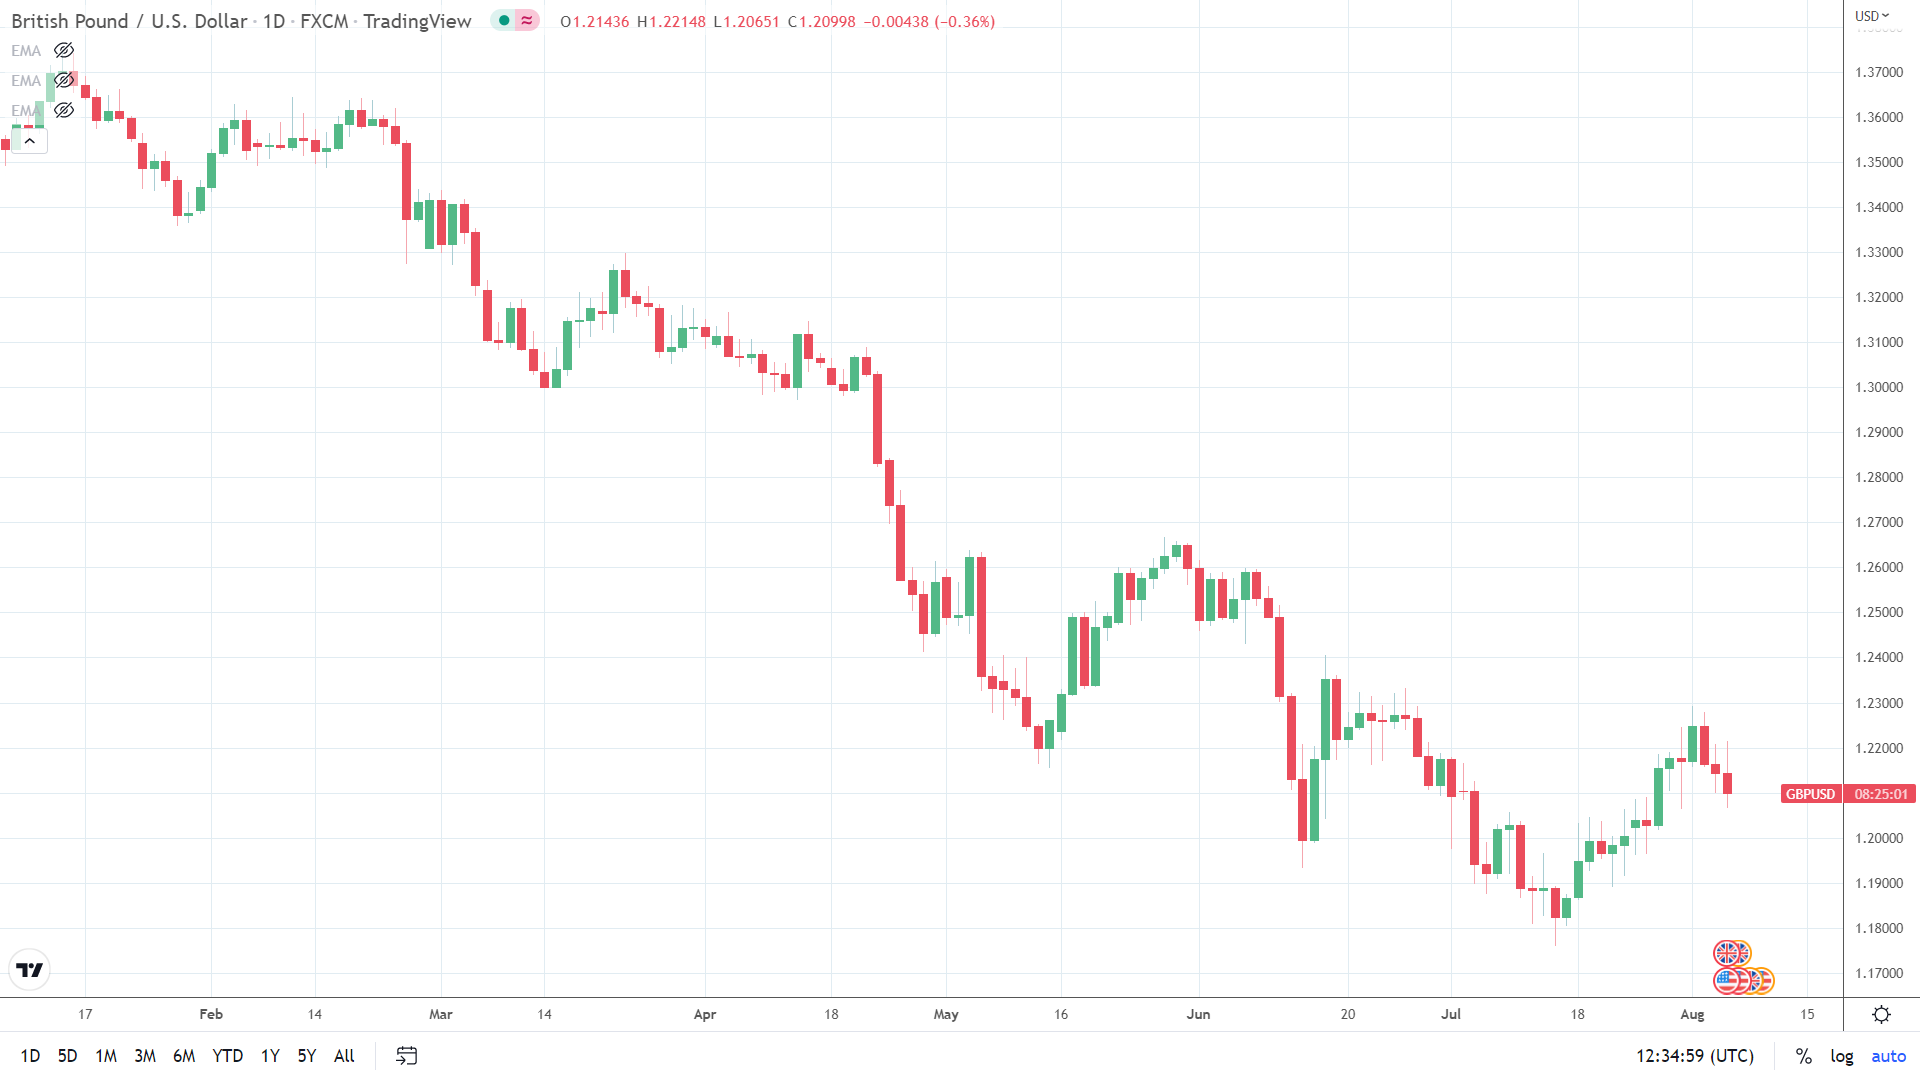 GBP/USD under pressure